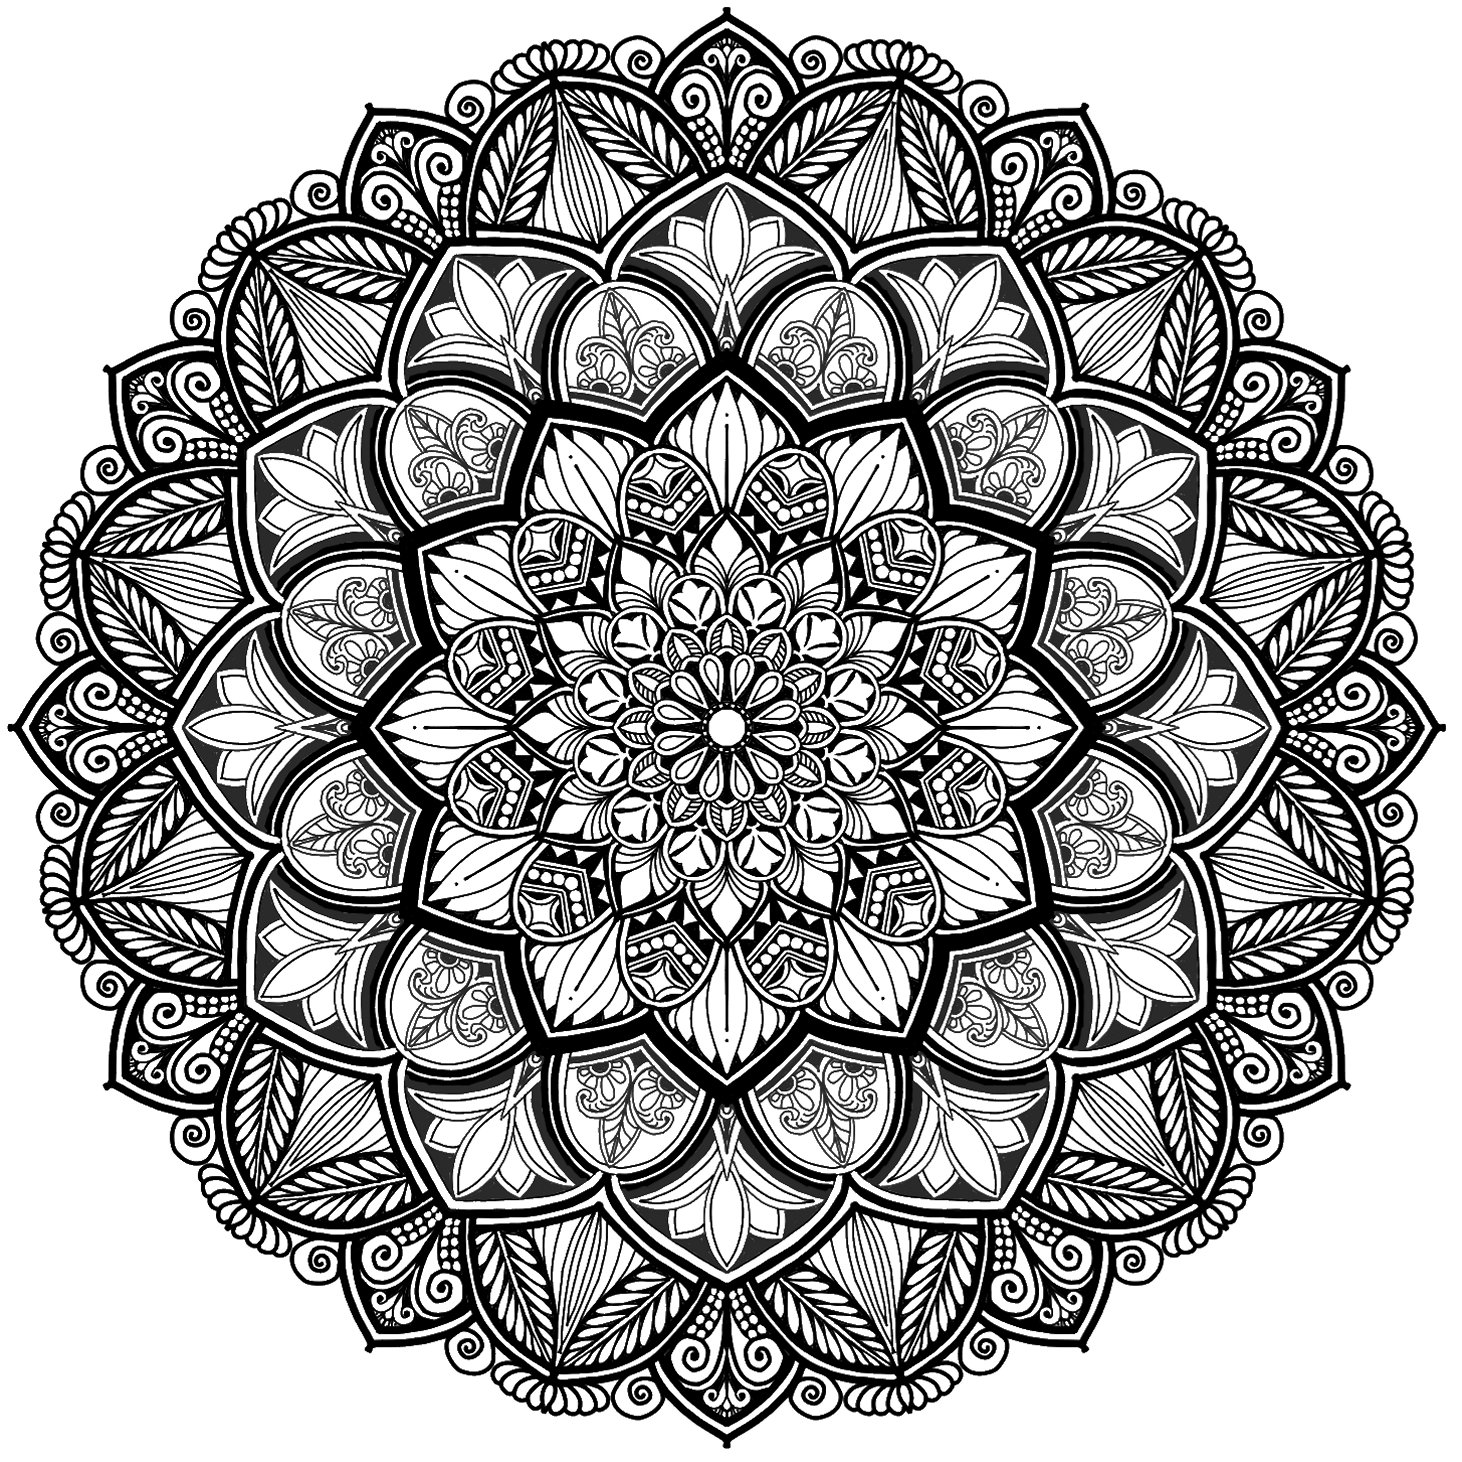 Digital Mandala design